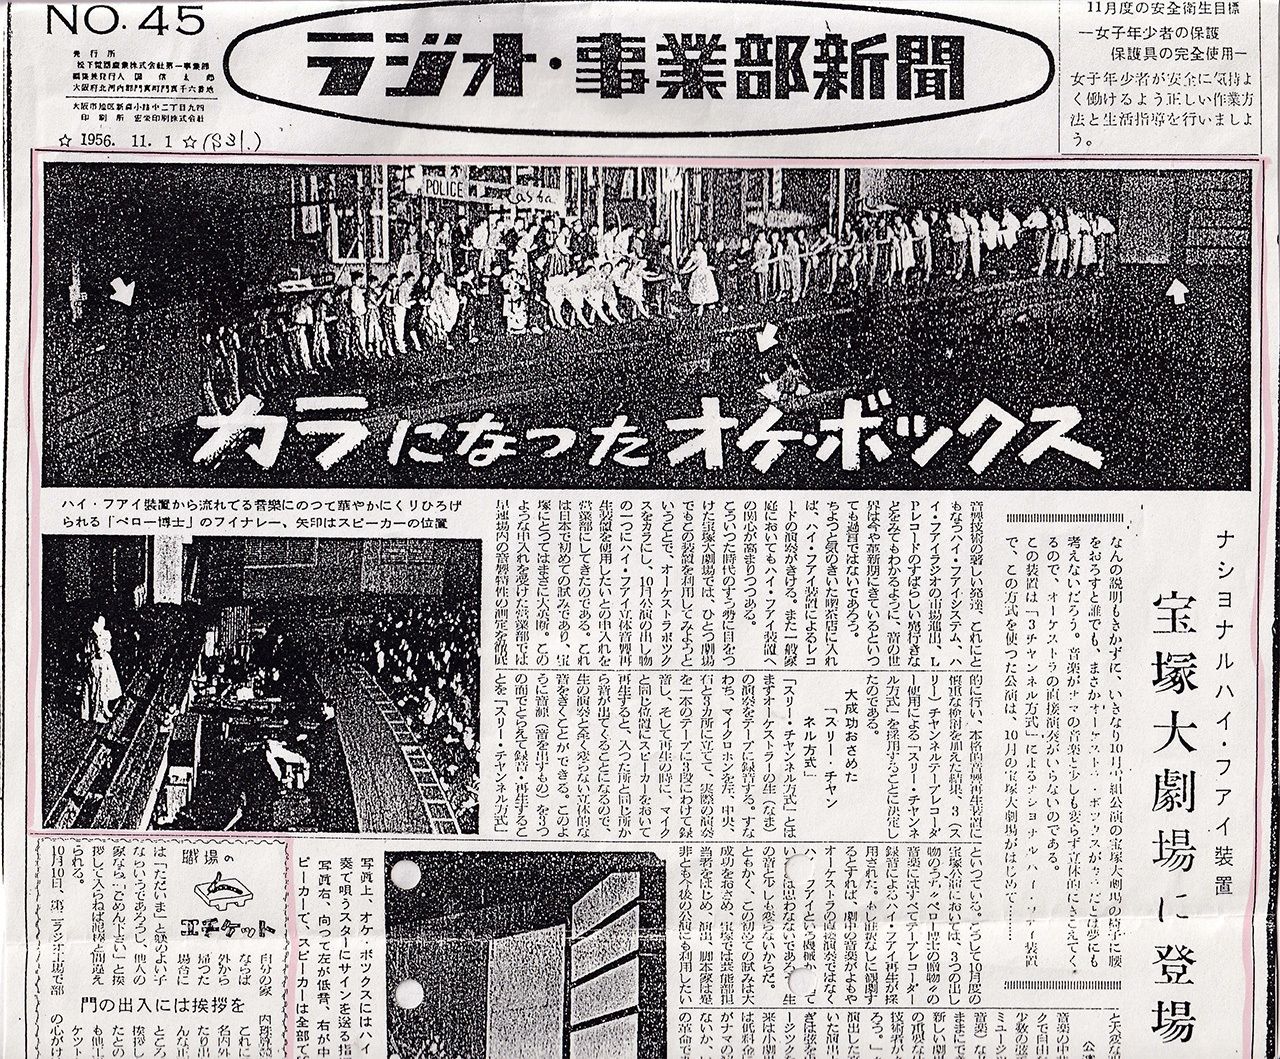 现场没有乐队，而是使用了松下电器的音响设备，报纸《广播与事业部新闻》对宝塚剧场的公演情景进行了报道（1956年11月1日刊，图片：笔者）